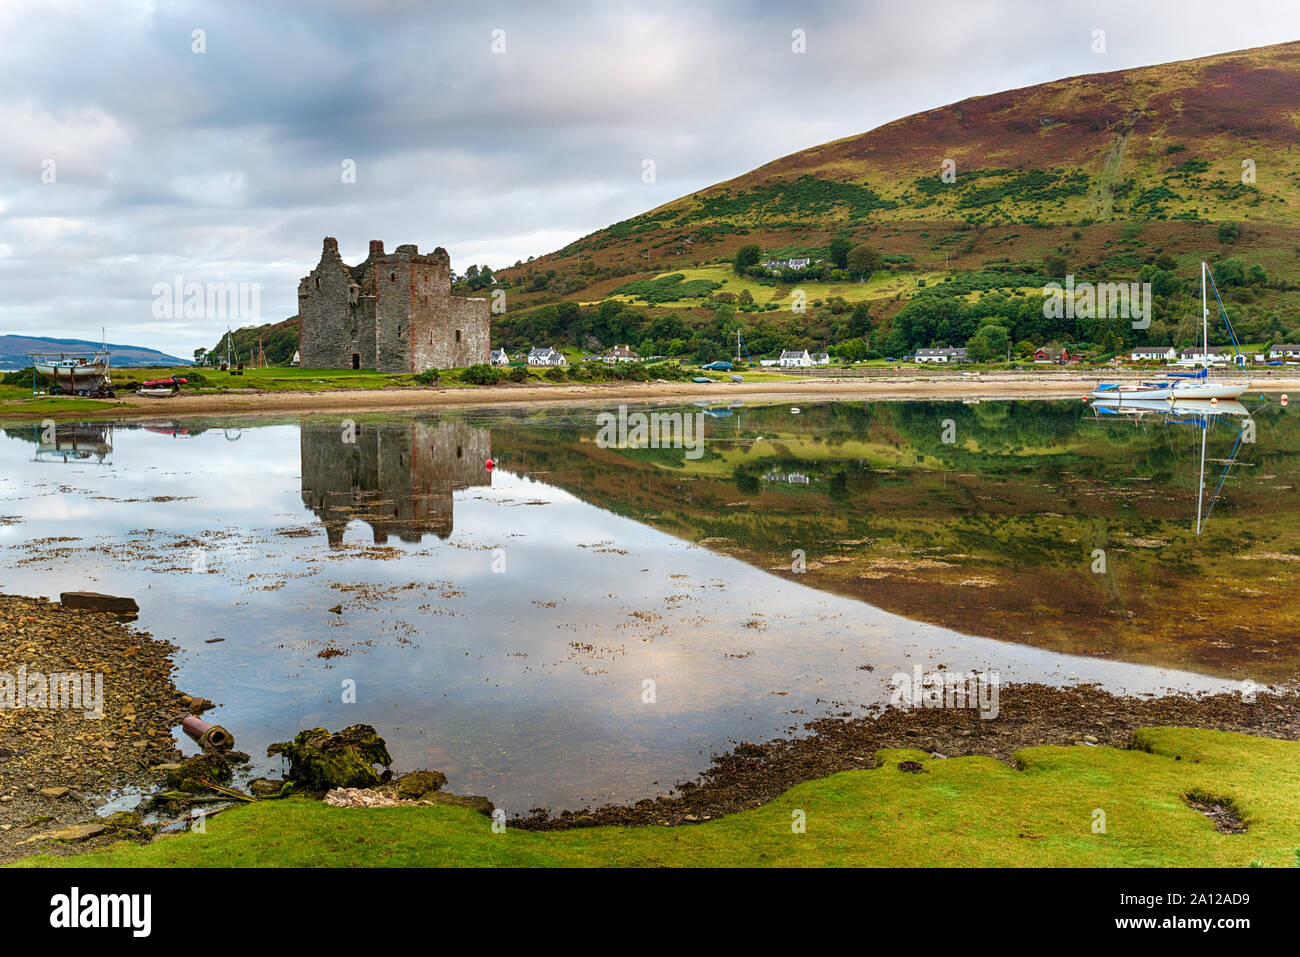 La mattina presto a Lochranza sull'isola di Arran, guardando fuori al vecchio castello in rovina Foto Stock